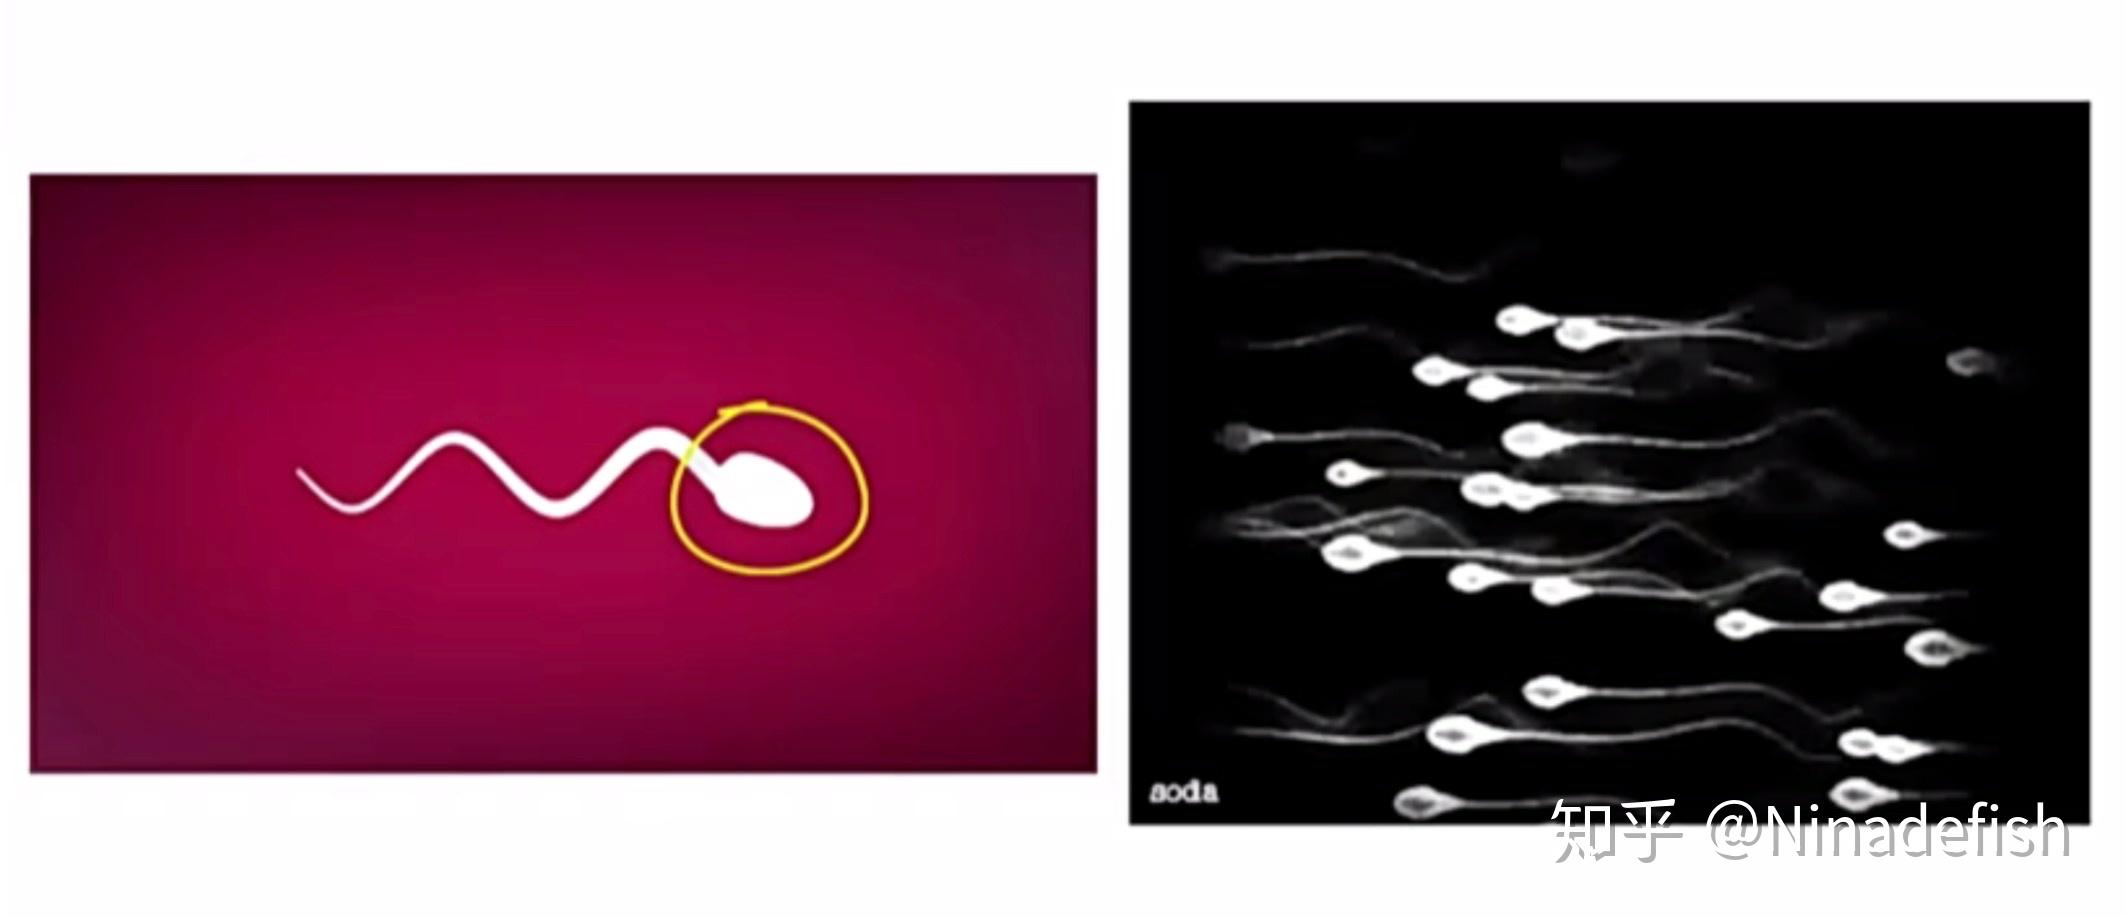 精子和卵子摄影图片-精子和卵子摄影作品-千库网